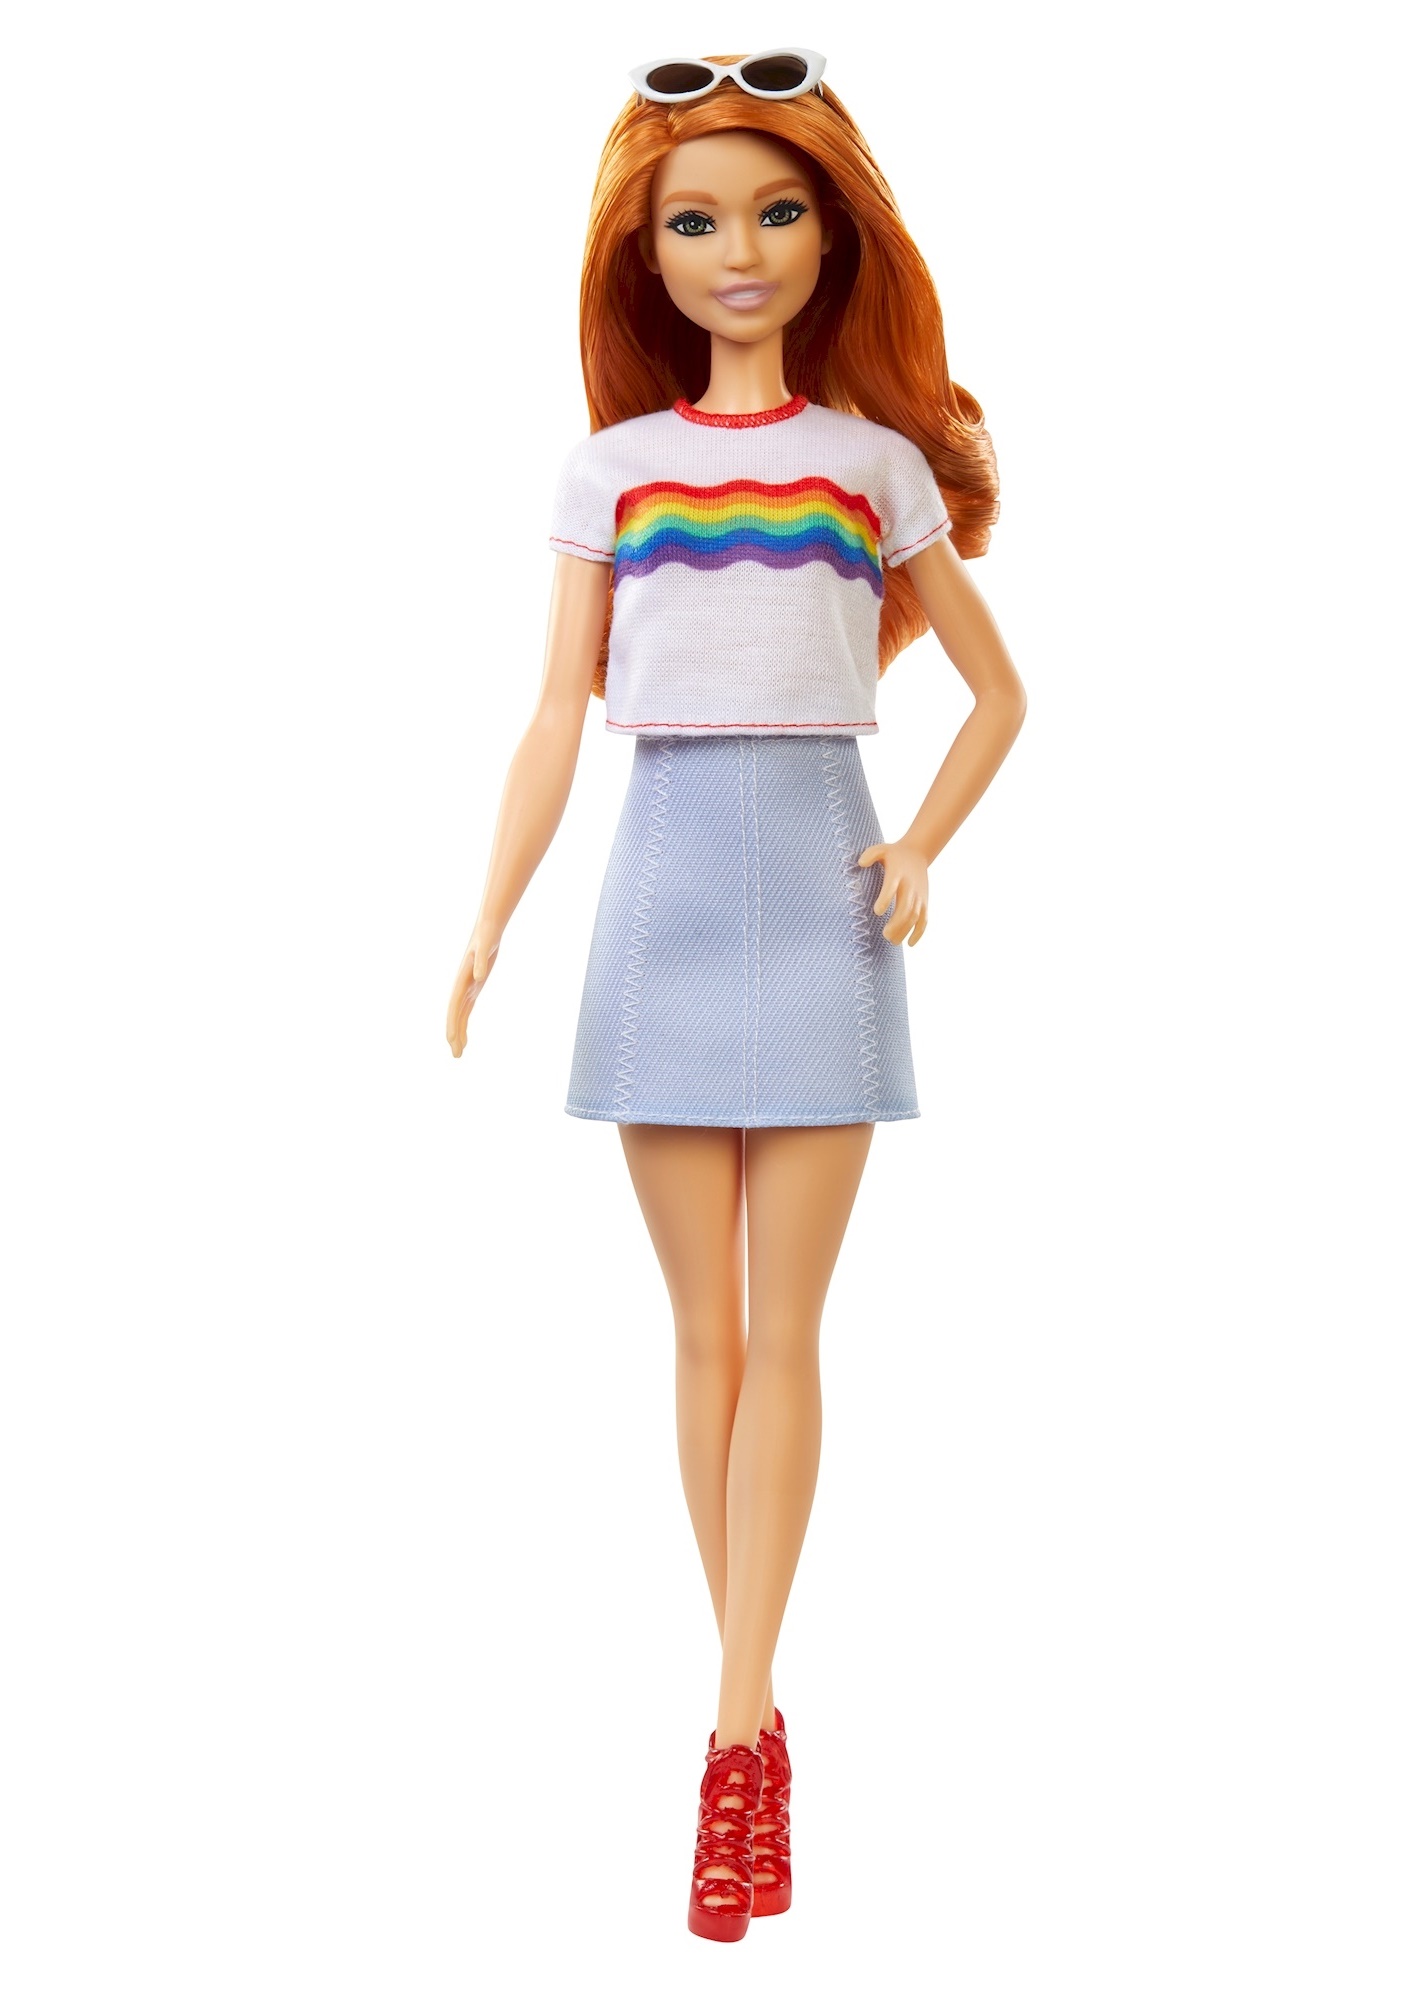 Купить Кукла Barbie из серии Игра с модой, 30 см модель 122, Mattel,